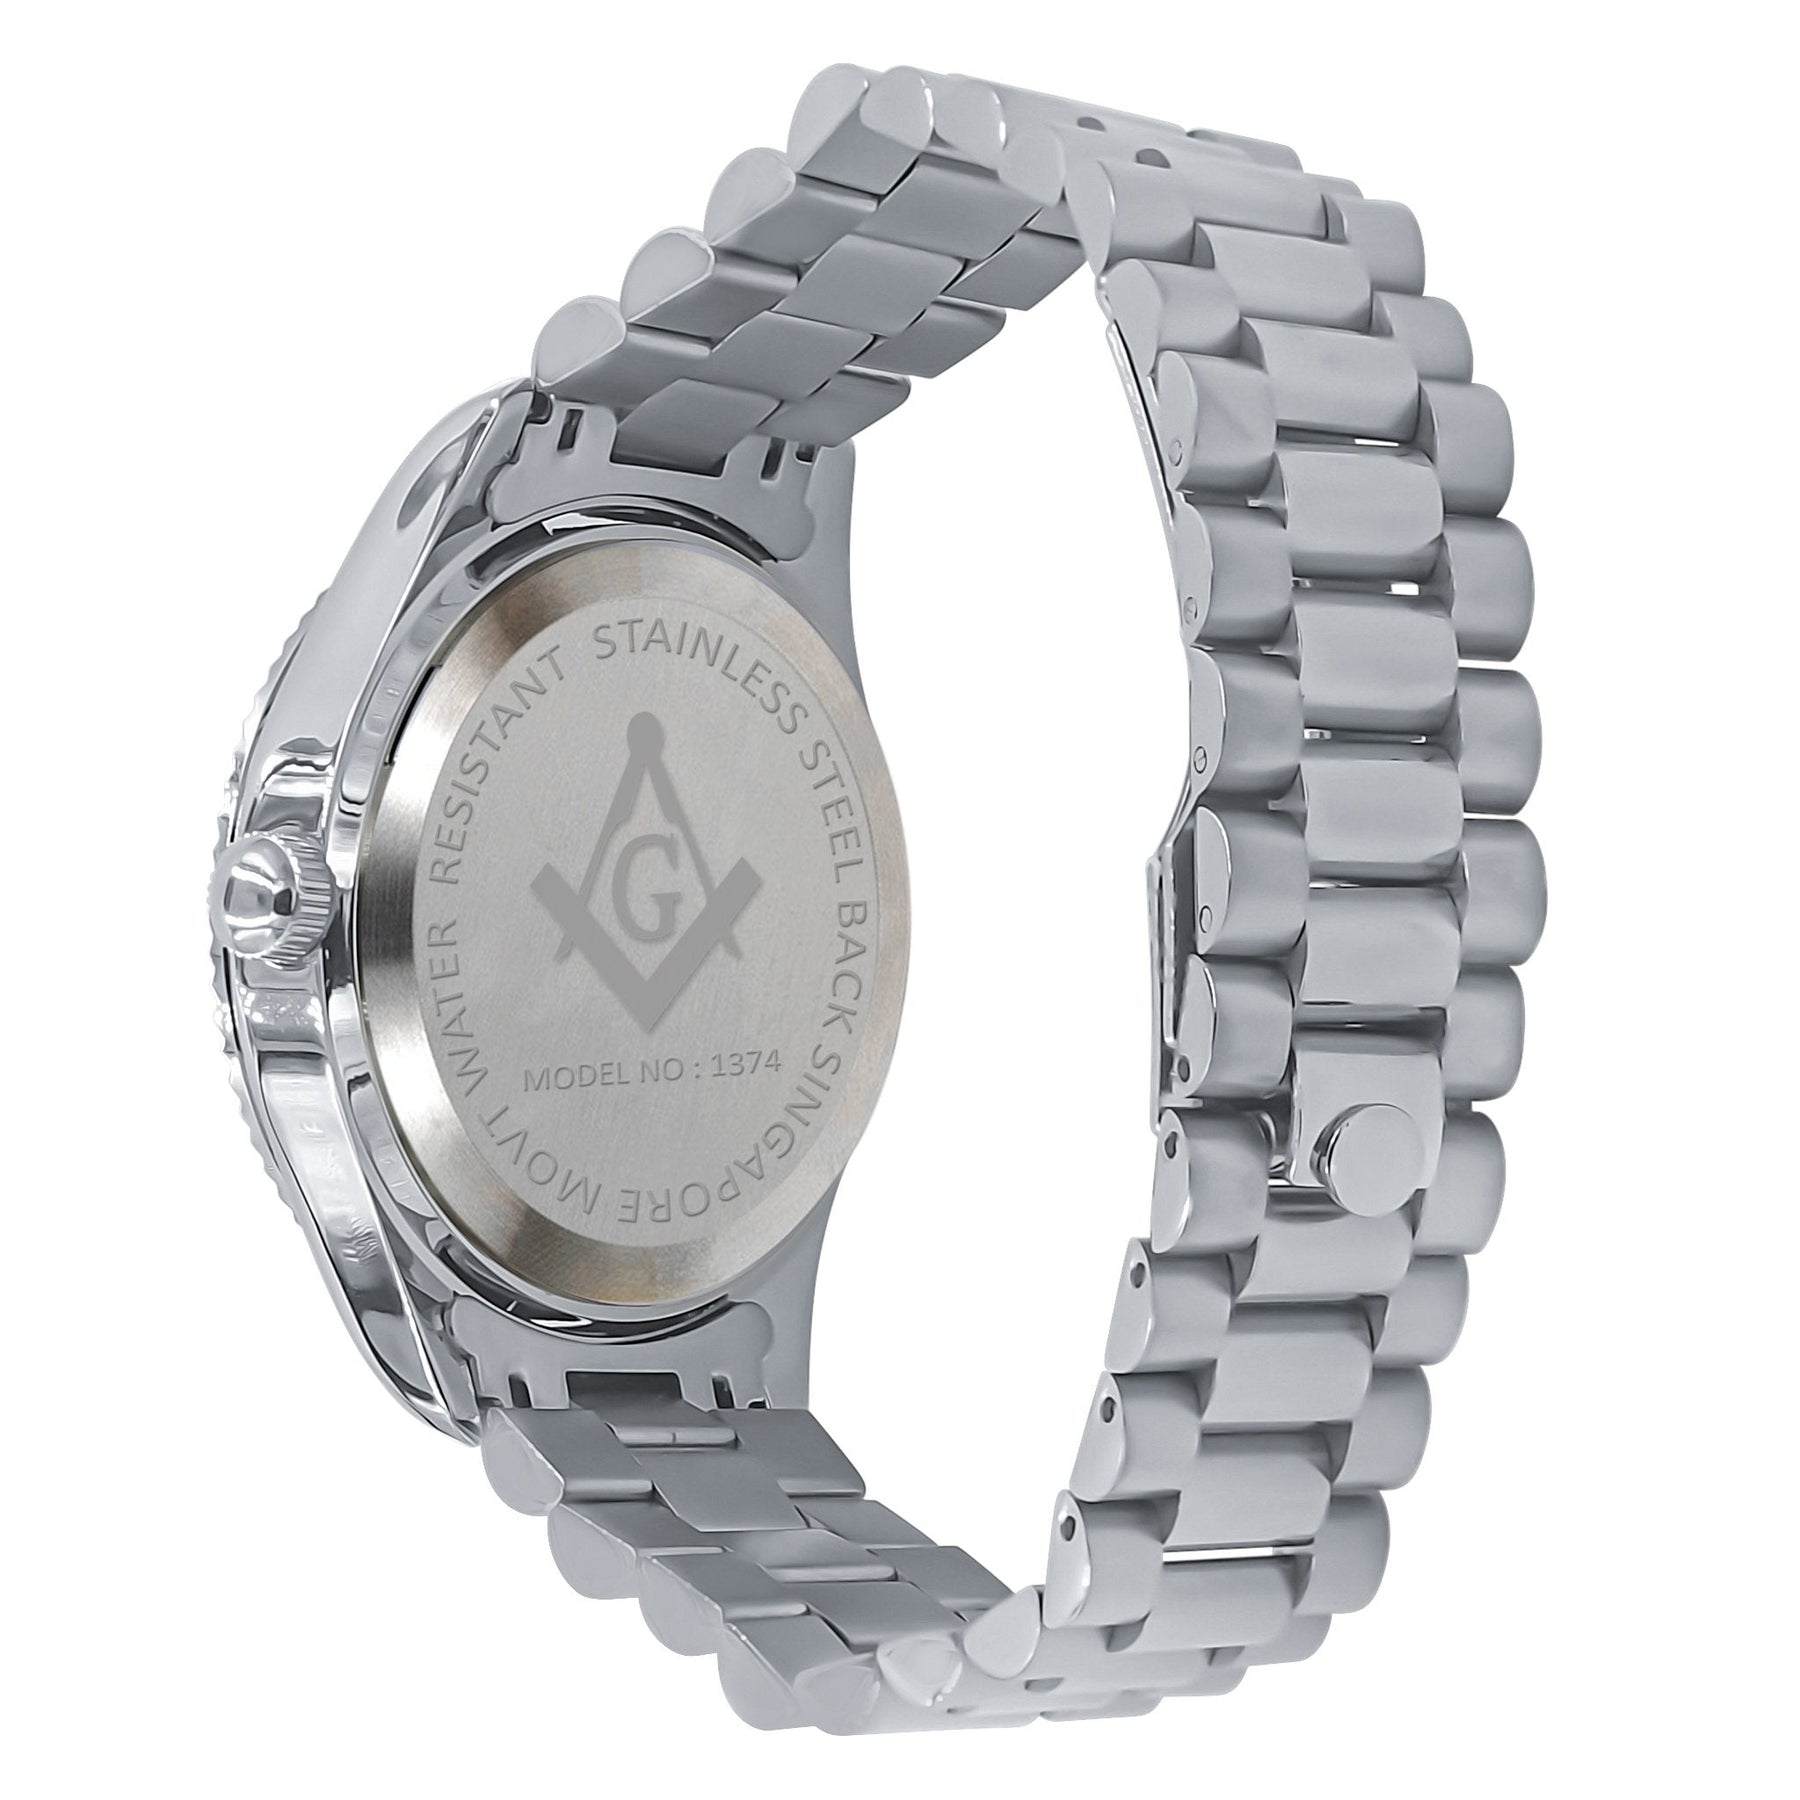 Masonic Iced Out Metallic Watch - Silver - Bricks Masons